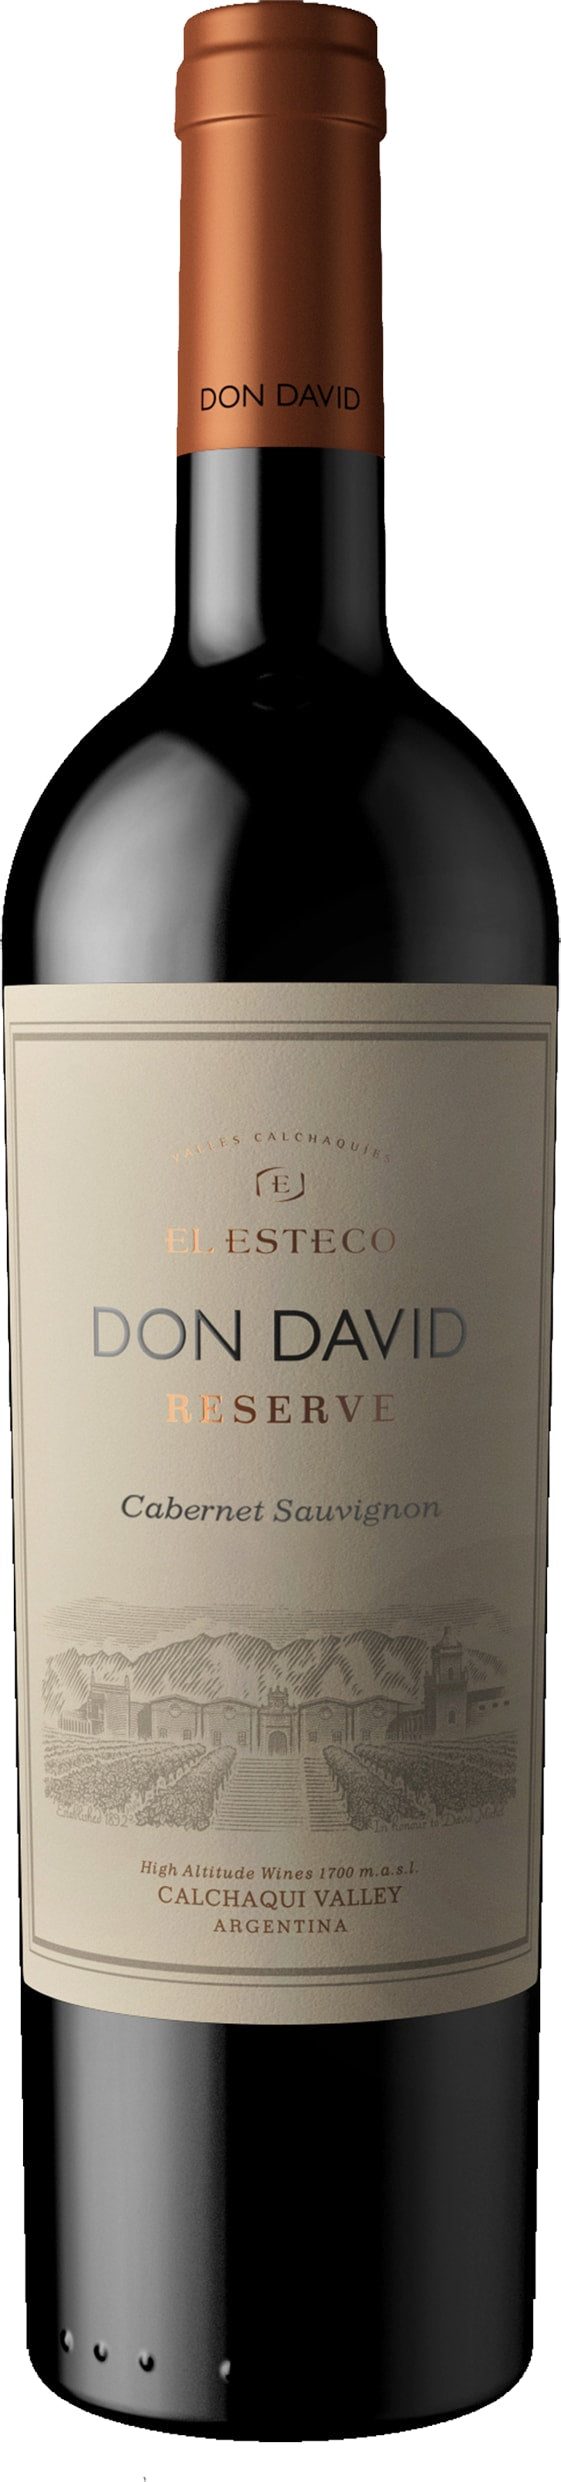 El Esteco Don David Cabernet Sauvignon 2021 75cl - Buy El Esteco Wines from GREAT WINES DIRECT wine shop